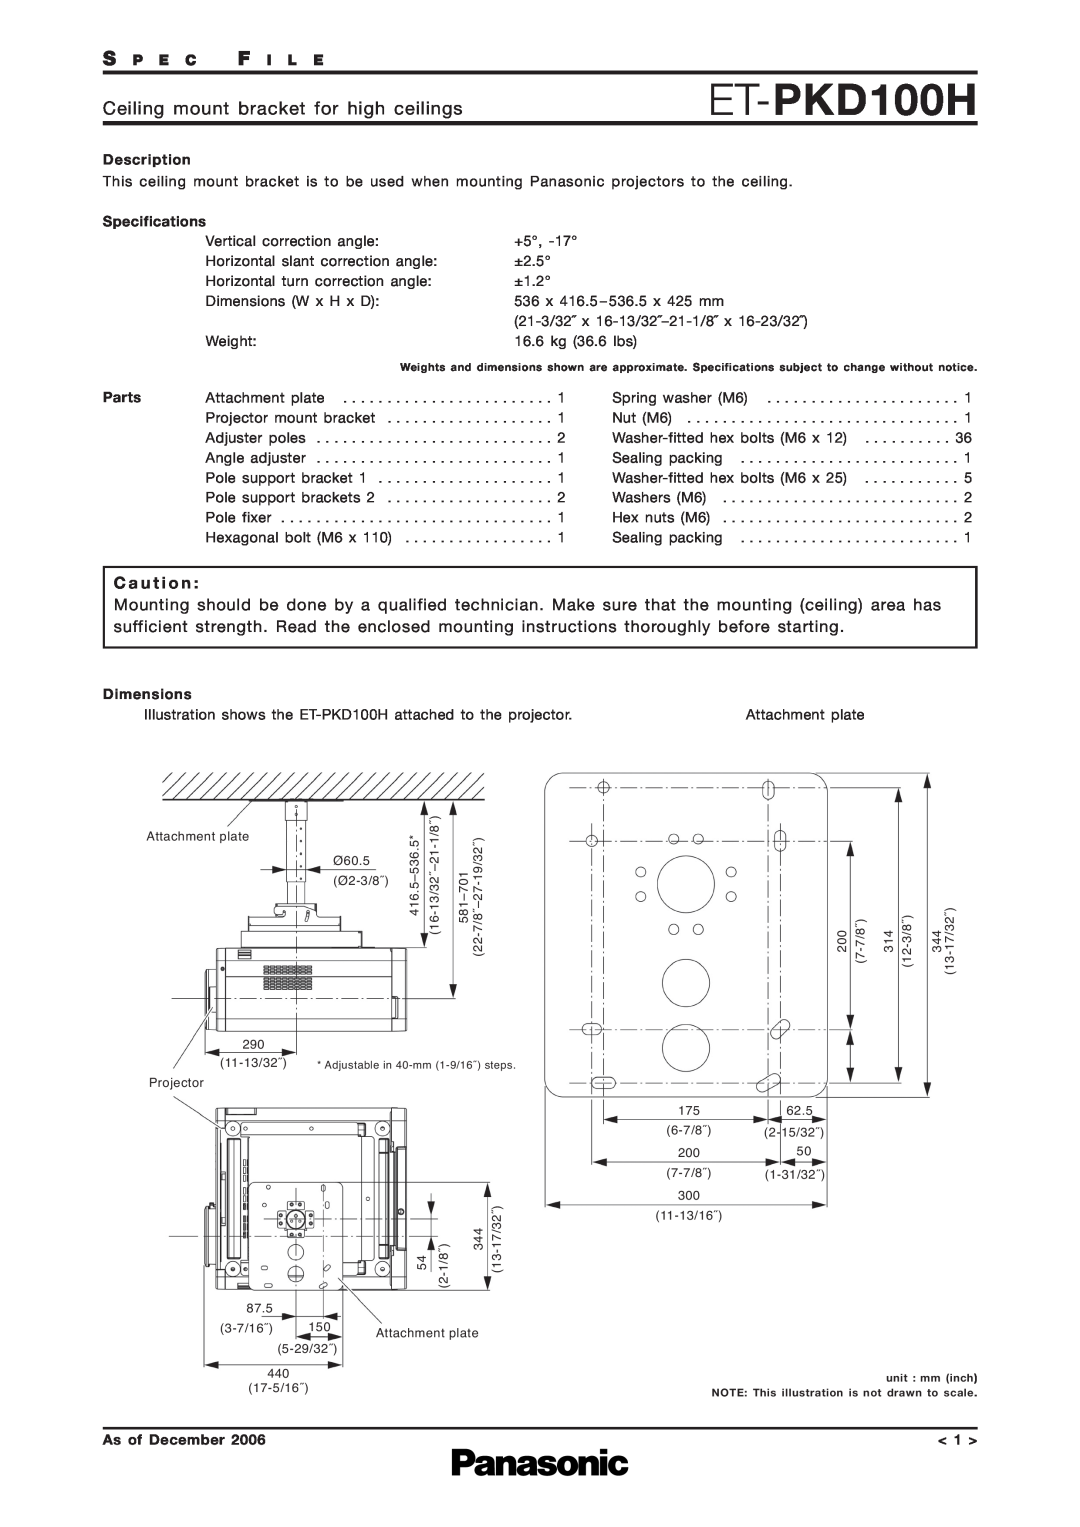 Panasonic ET-PKD100H specifications Ceiling mount bracket for high ceilings, C a u t i o n, S P E C F I L E, Description 